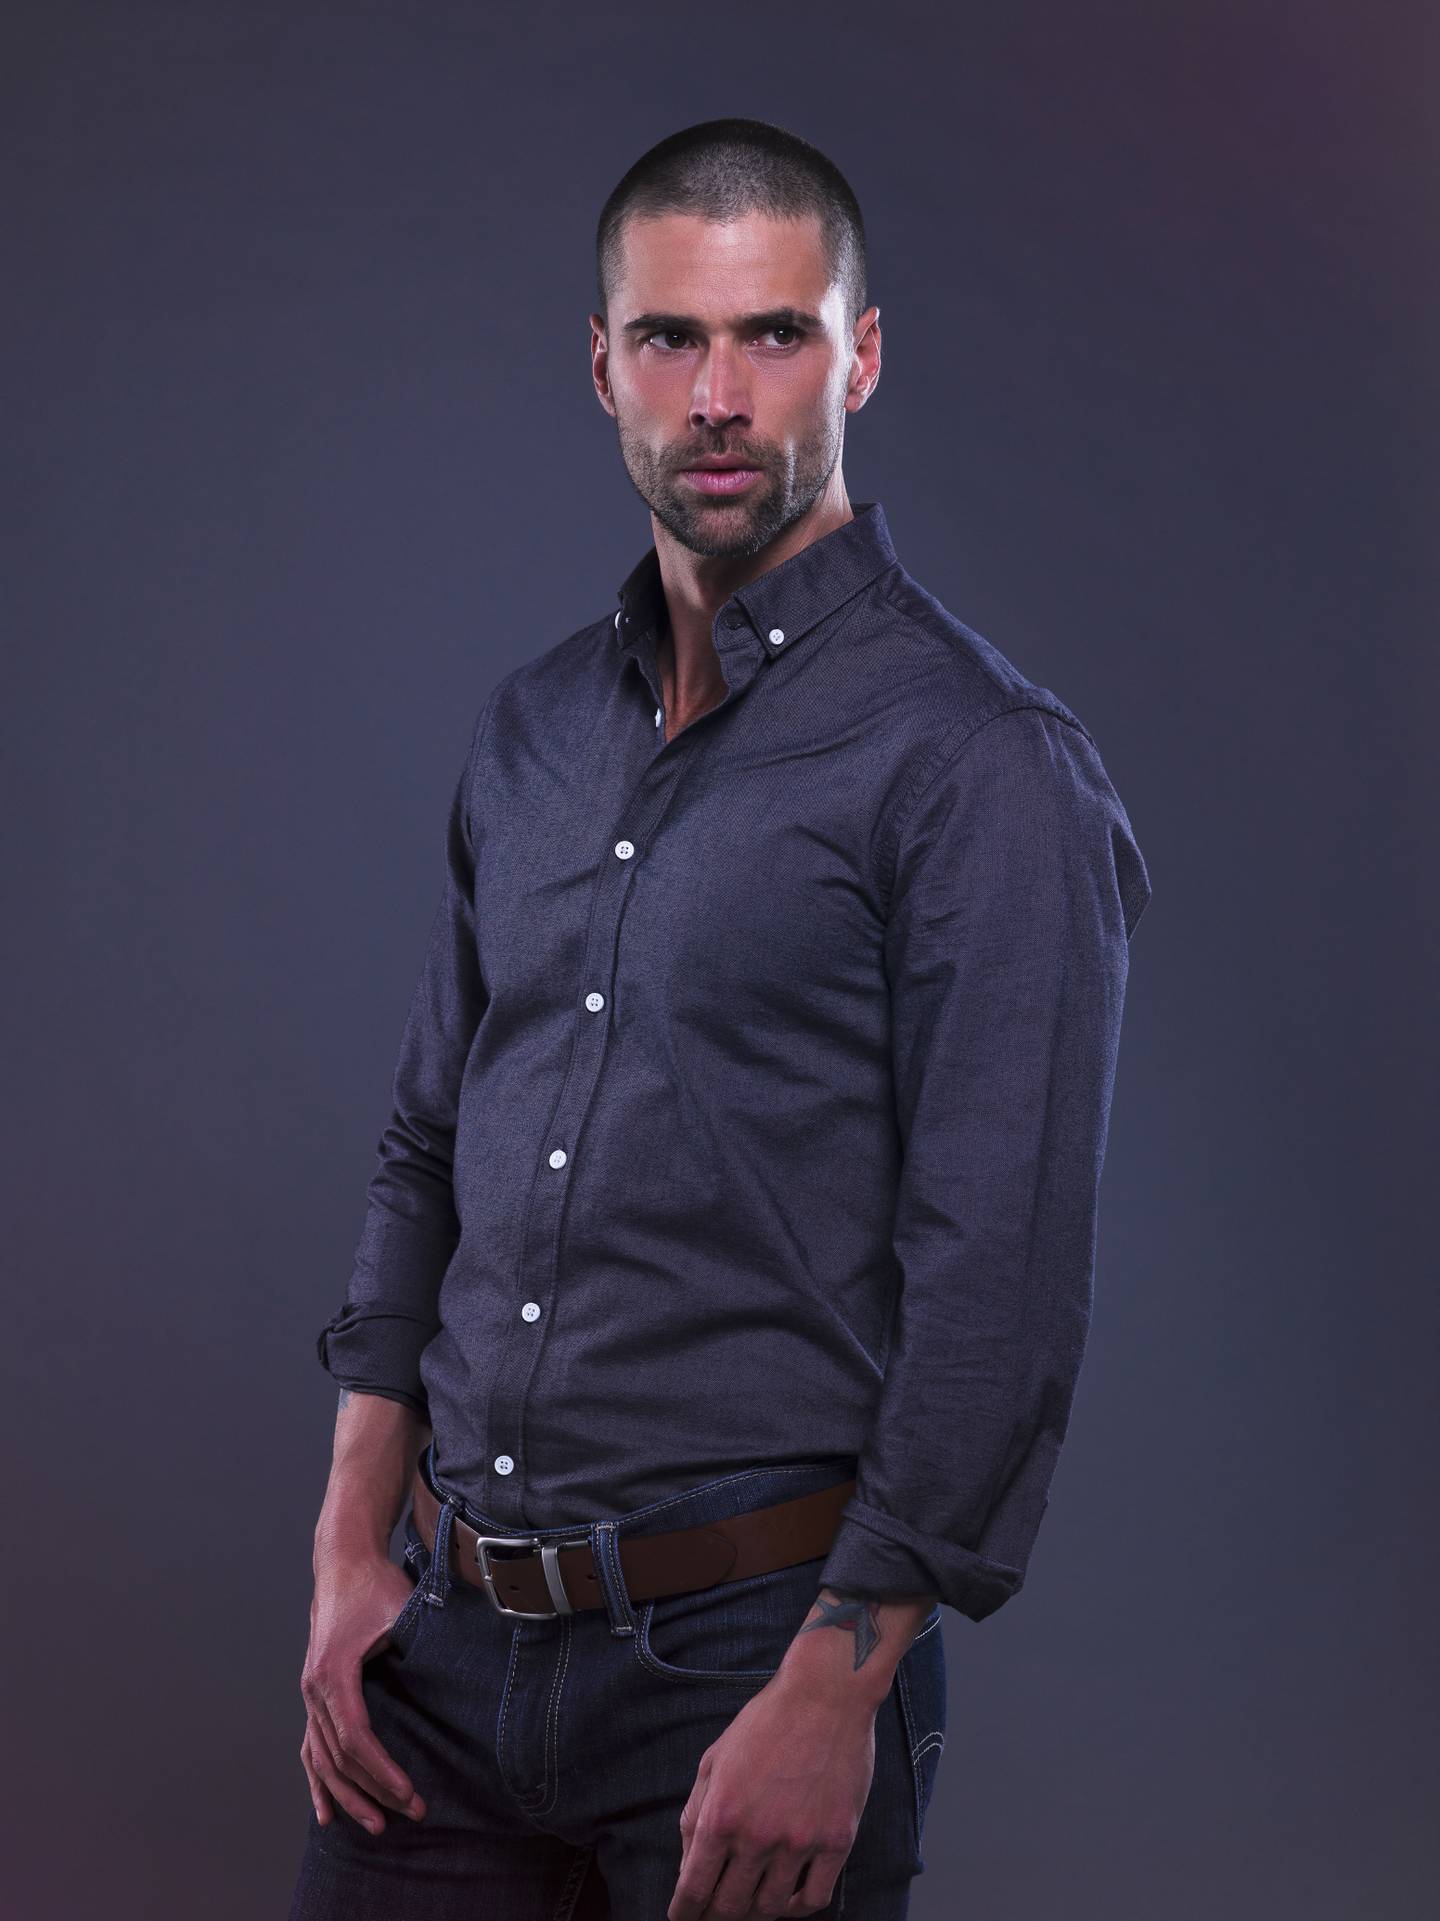 El actor Matías Novoa interpreta al agente Daniel Laborde en la serie 'Enemigo íntimo', Fotografía: Telemundo Internacional para La Nación